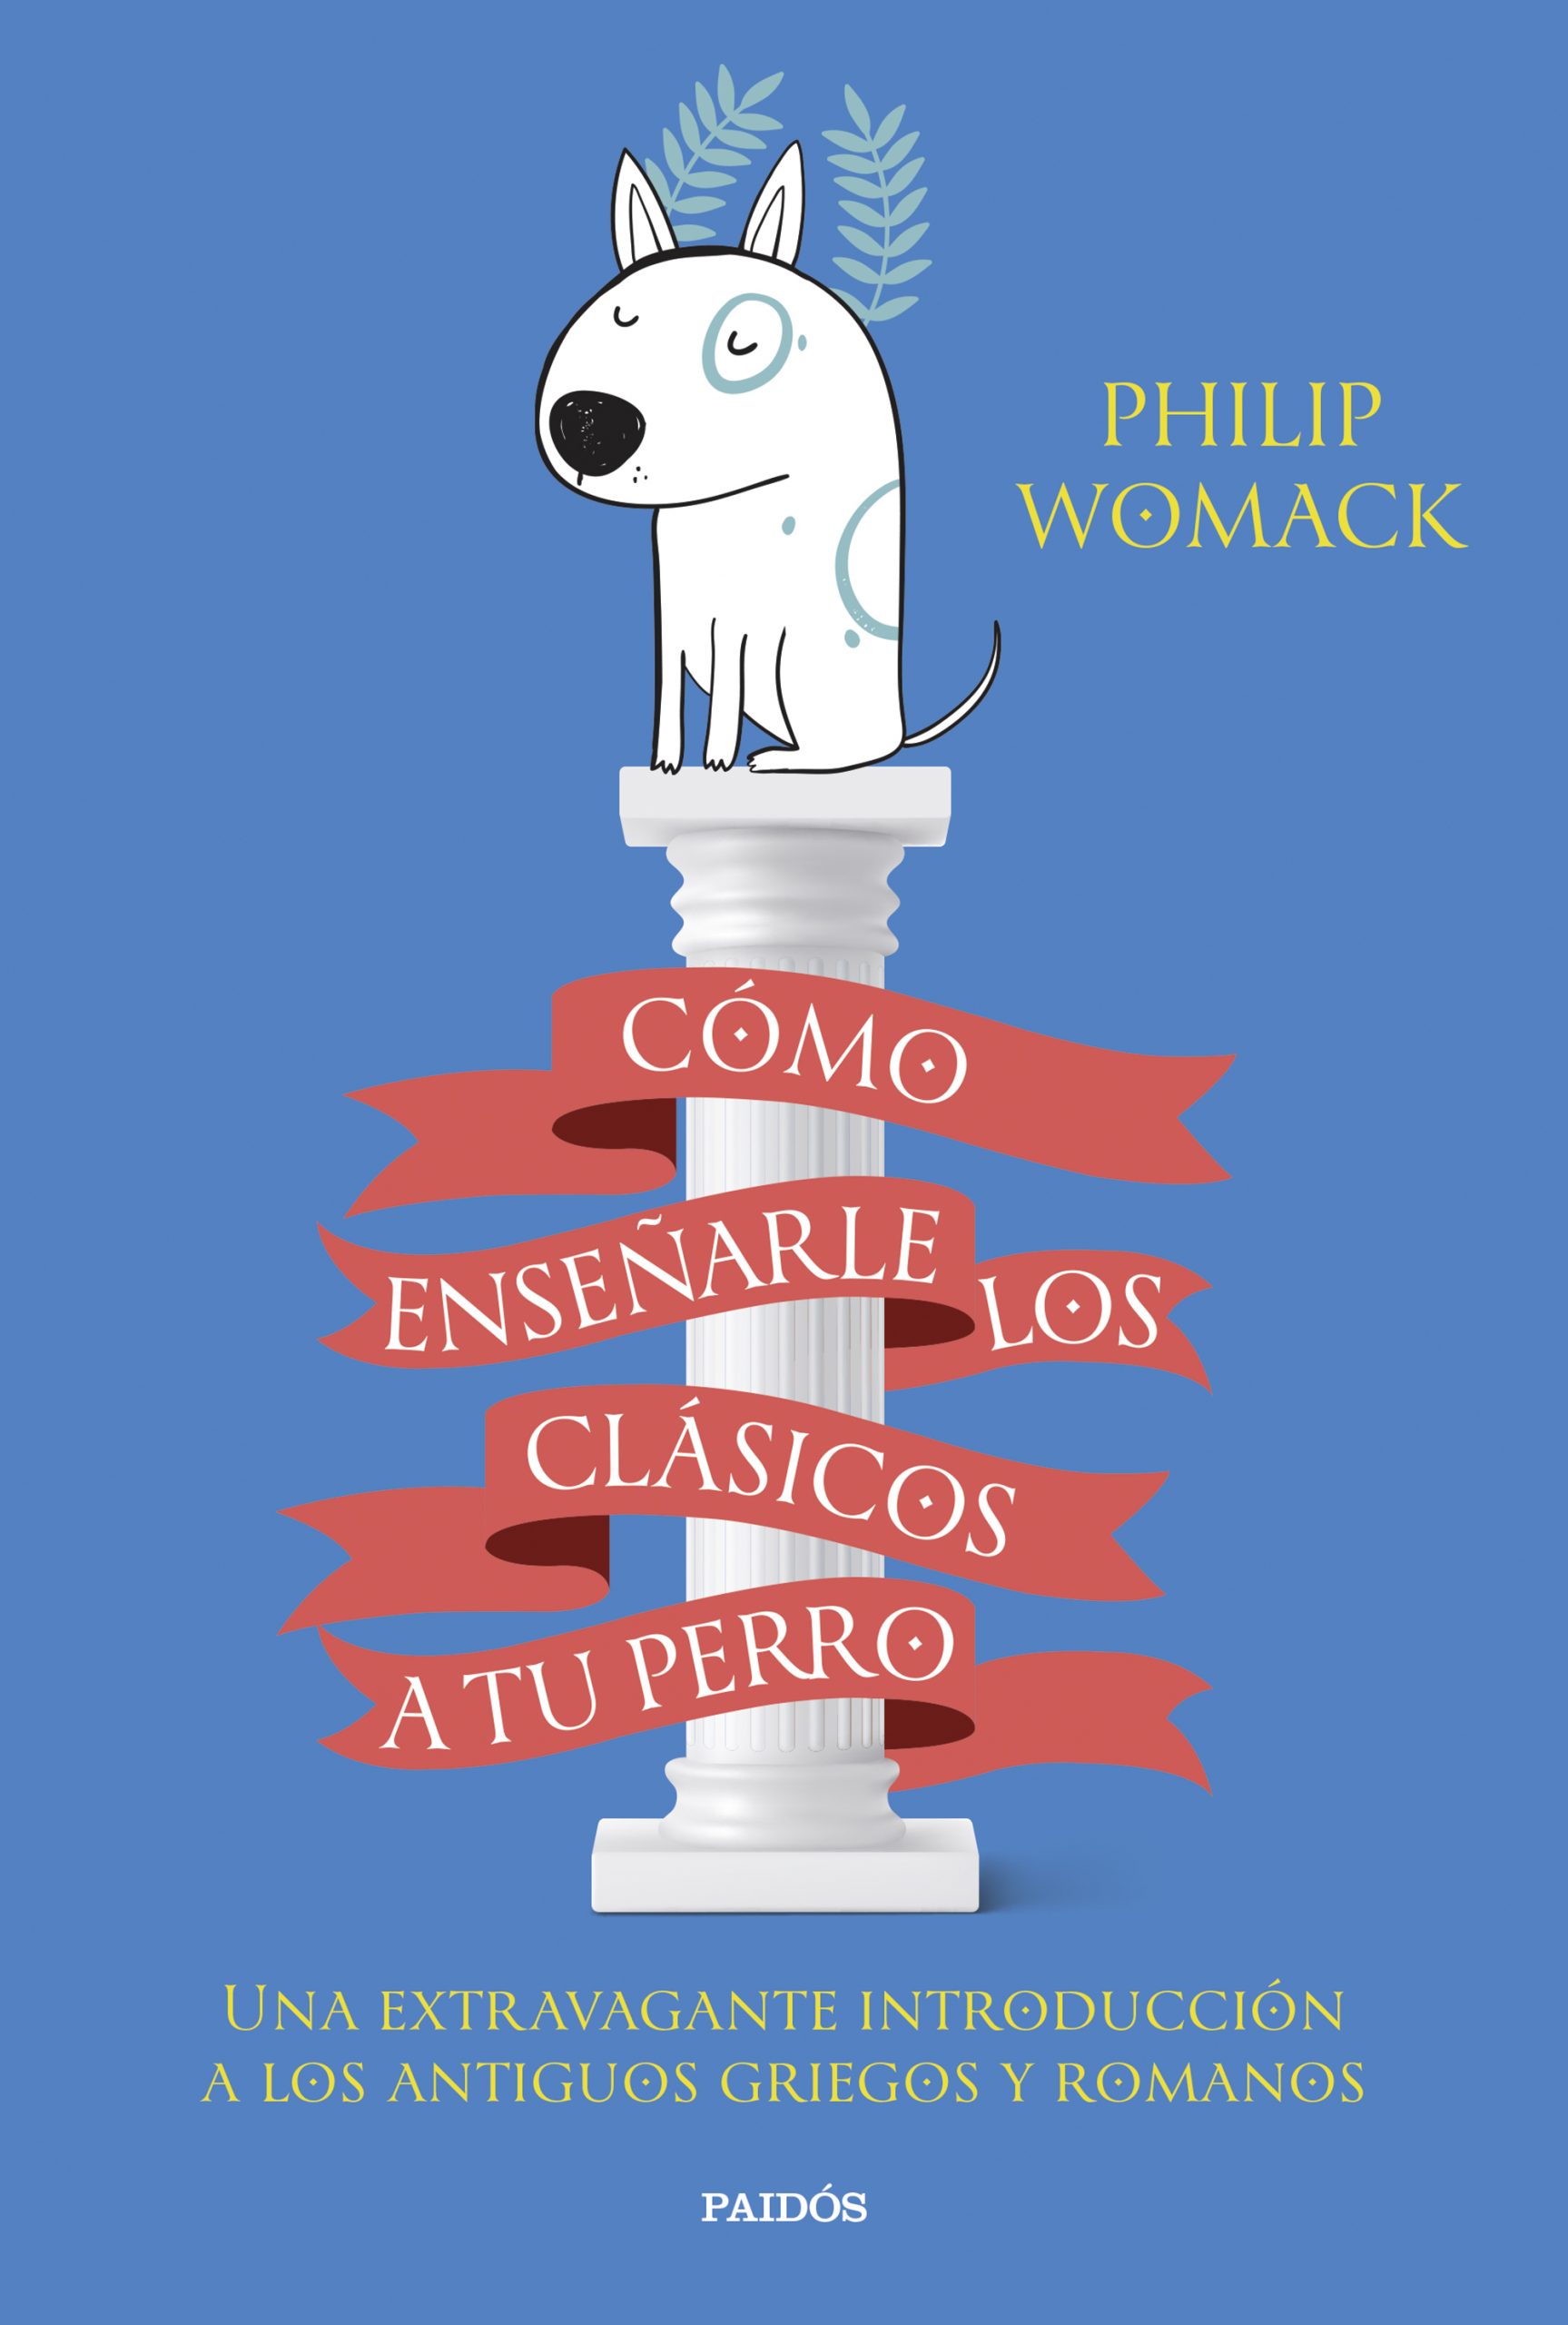 Cómo enseñarle los clásicos a tu perro, de Philip Womack